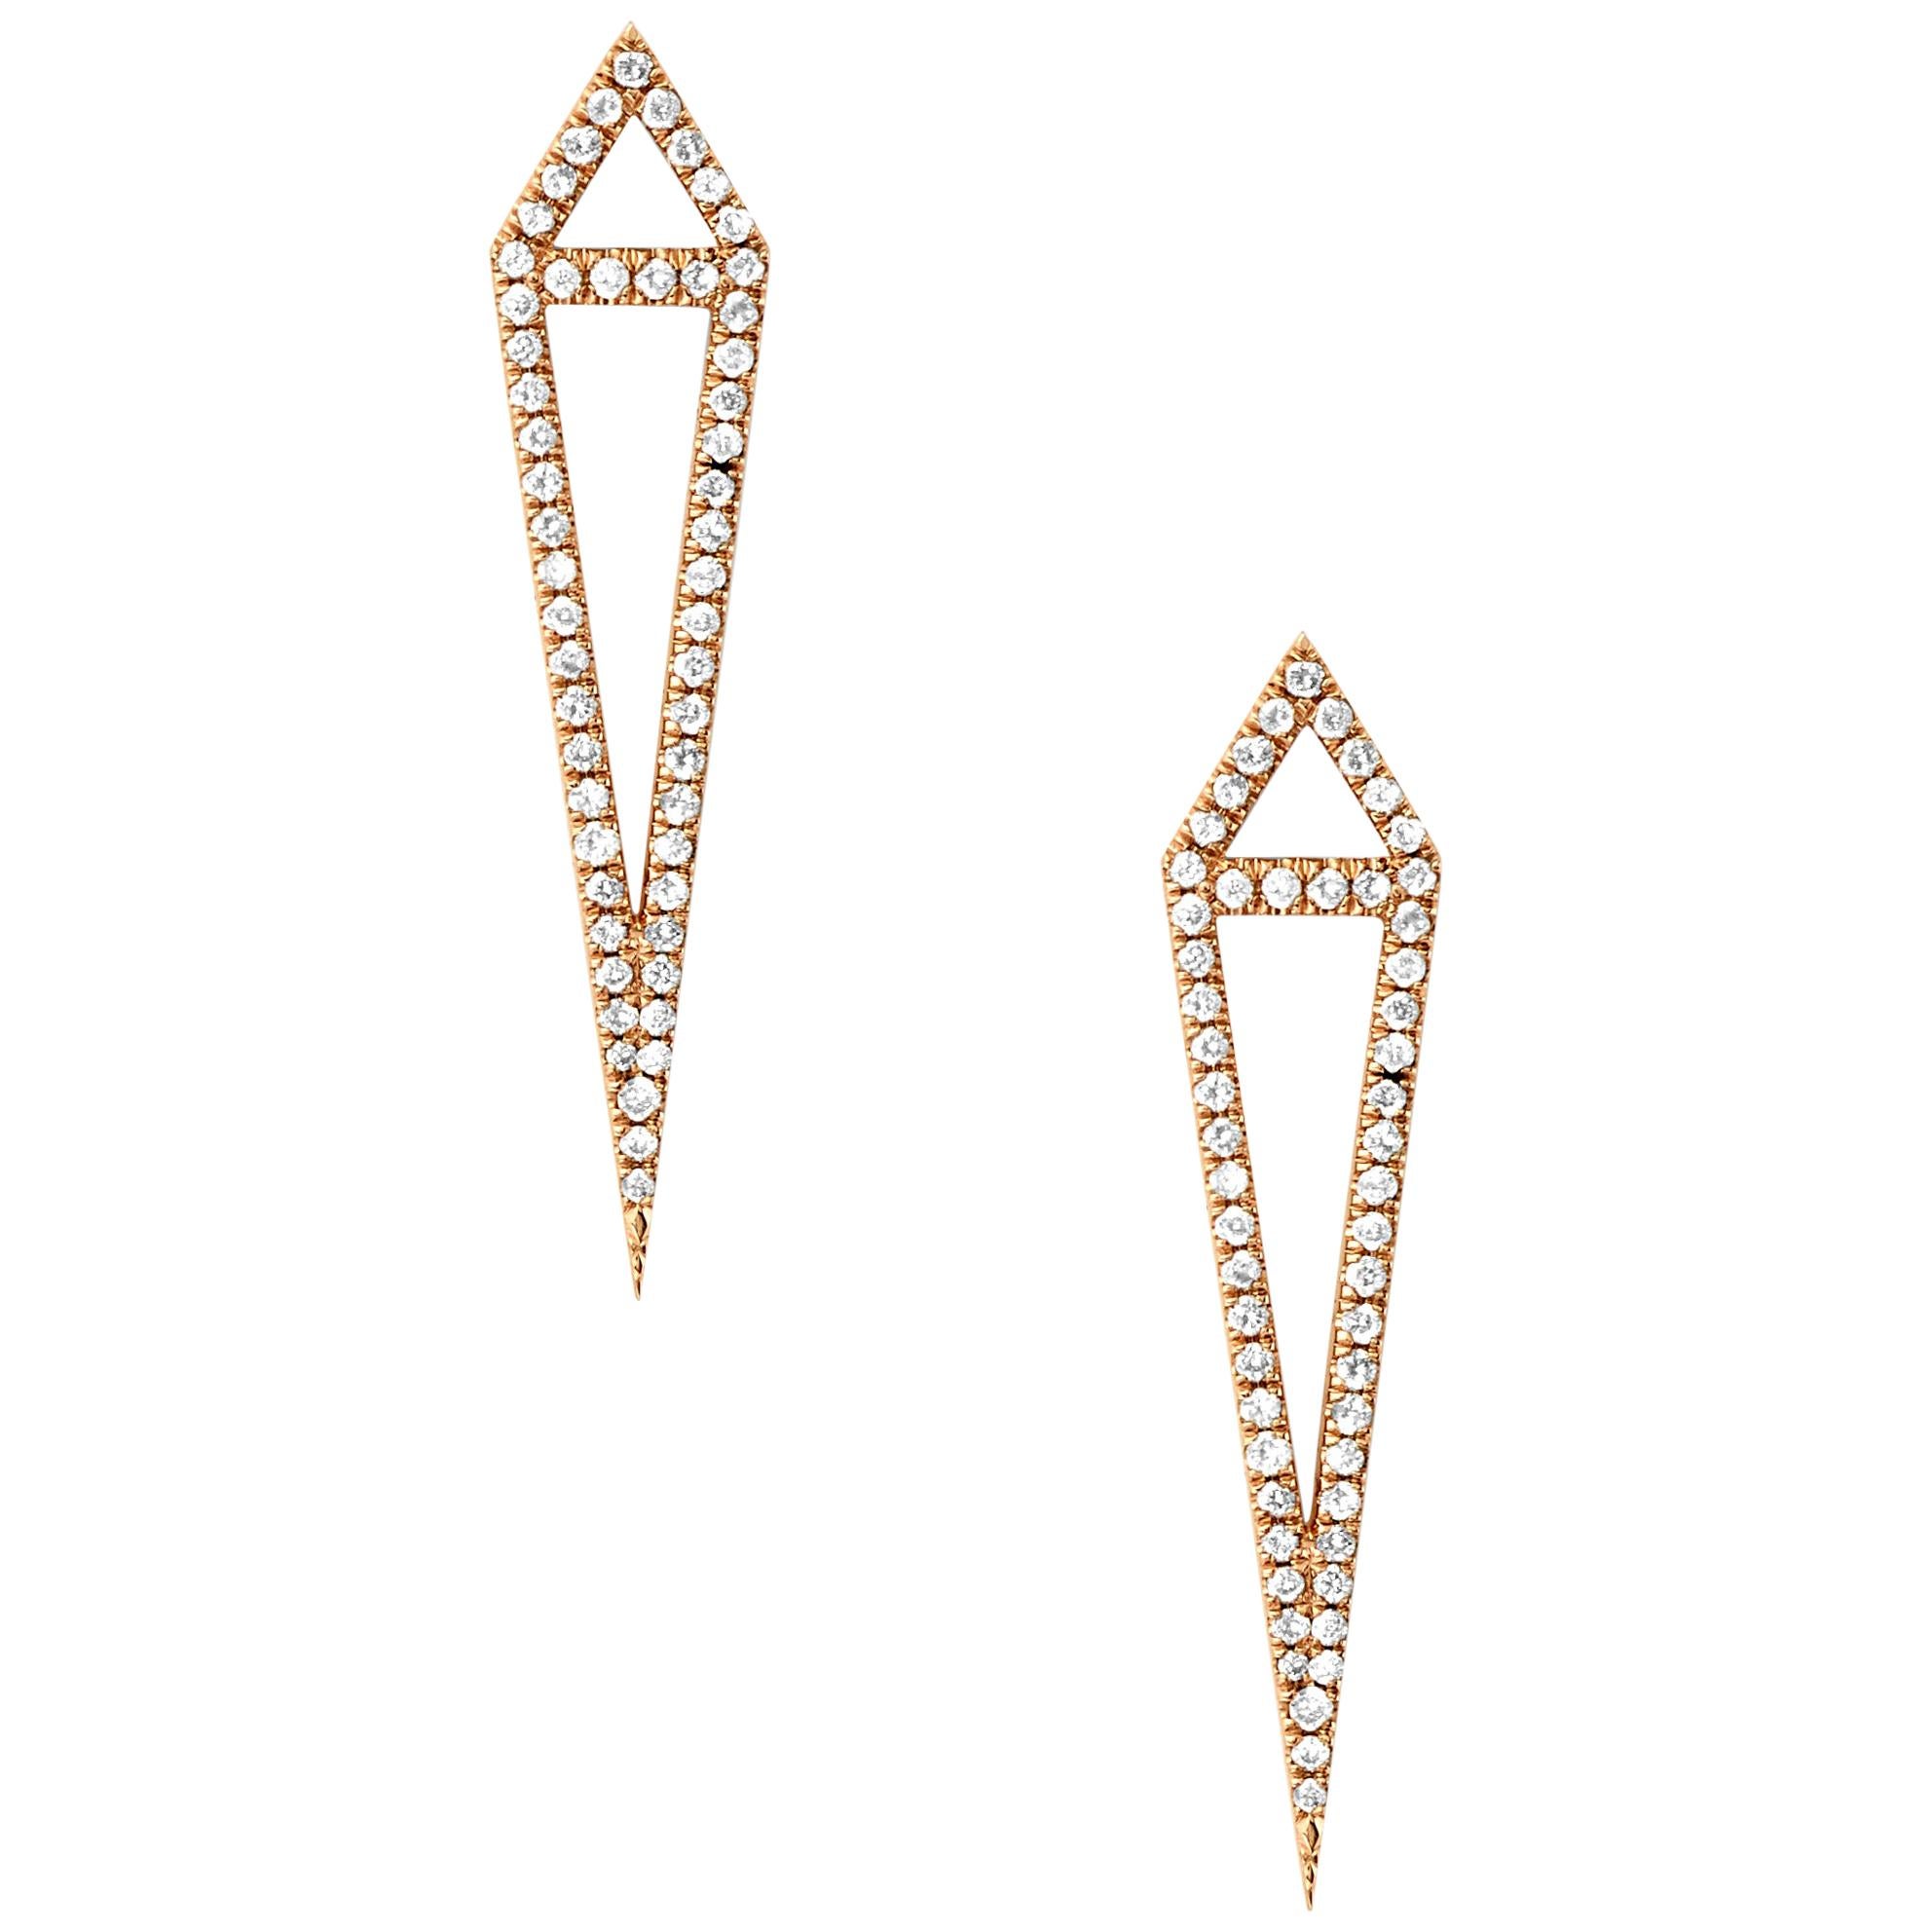 Eva Fehren Dagger Stud Earrings in 18 Karat Rose Gold